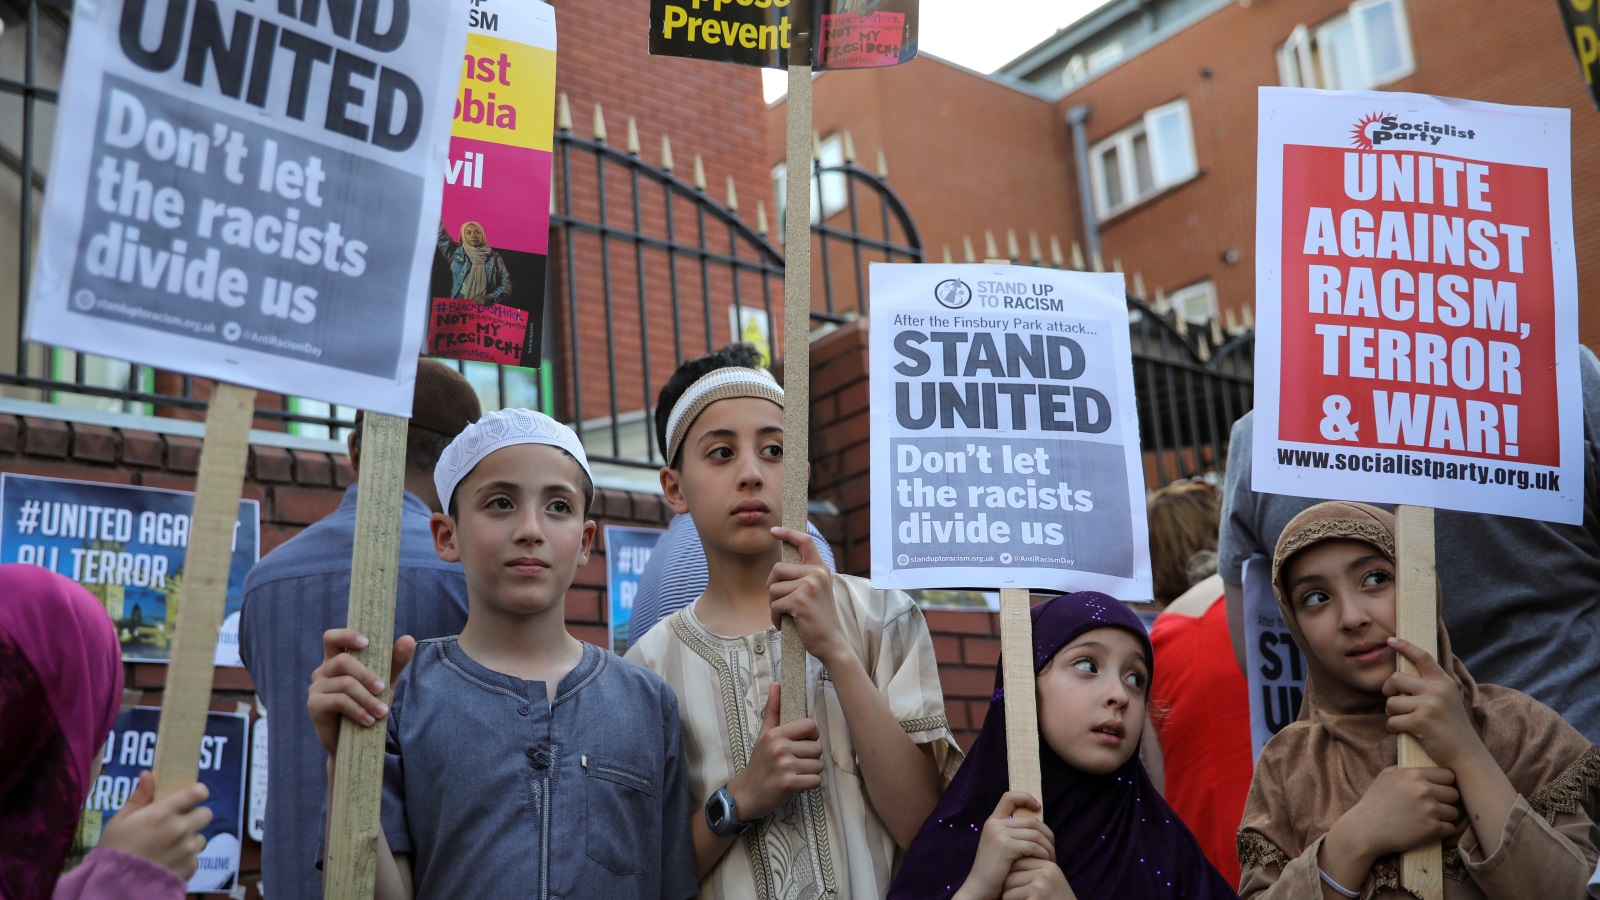 مسلمو بريطانيا تعرضوا لهجمات عنصرية متزايدة خاصة مع تصاعد خطاب اليمين المتطرف (رويترز)